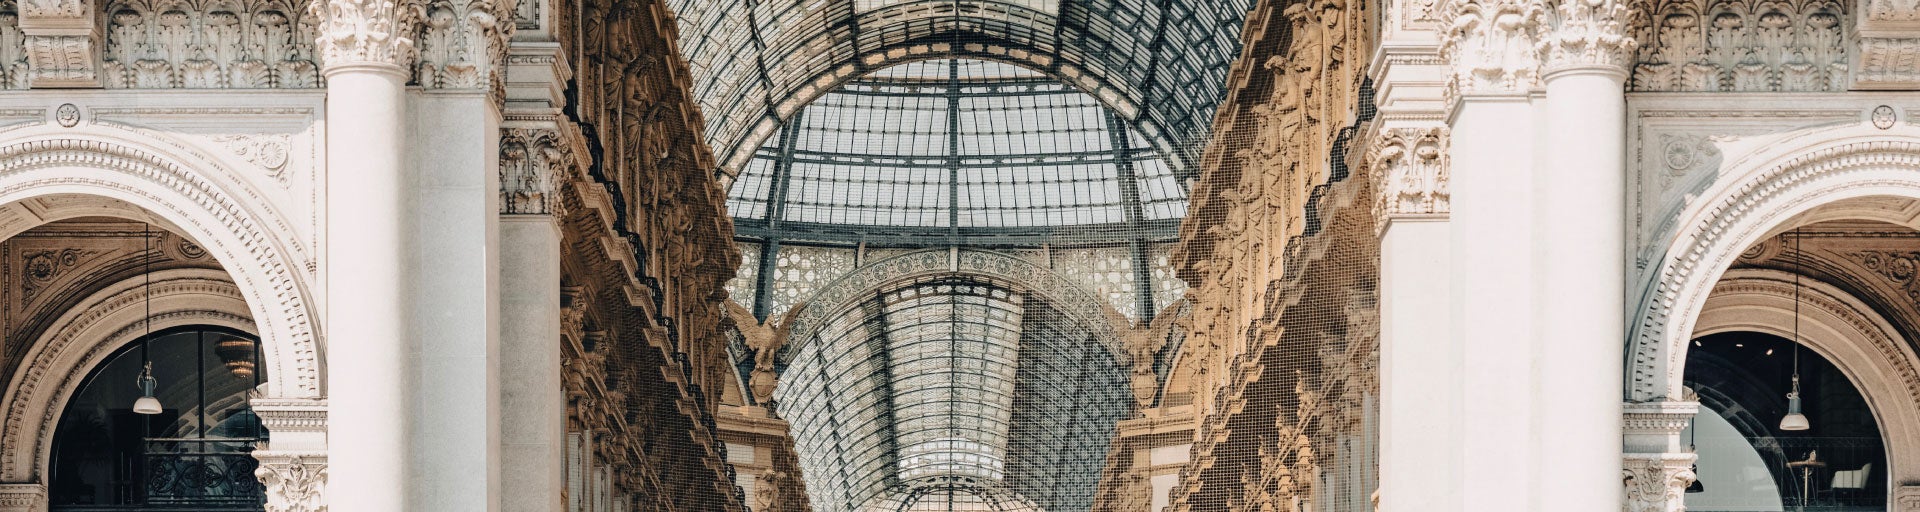 Interior Design of The Galleria Vittorio Emanuele II in Milan, Italy